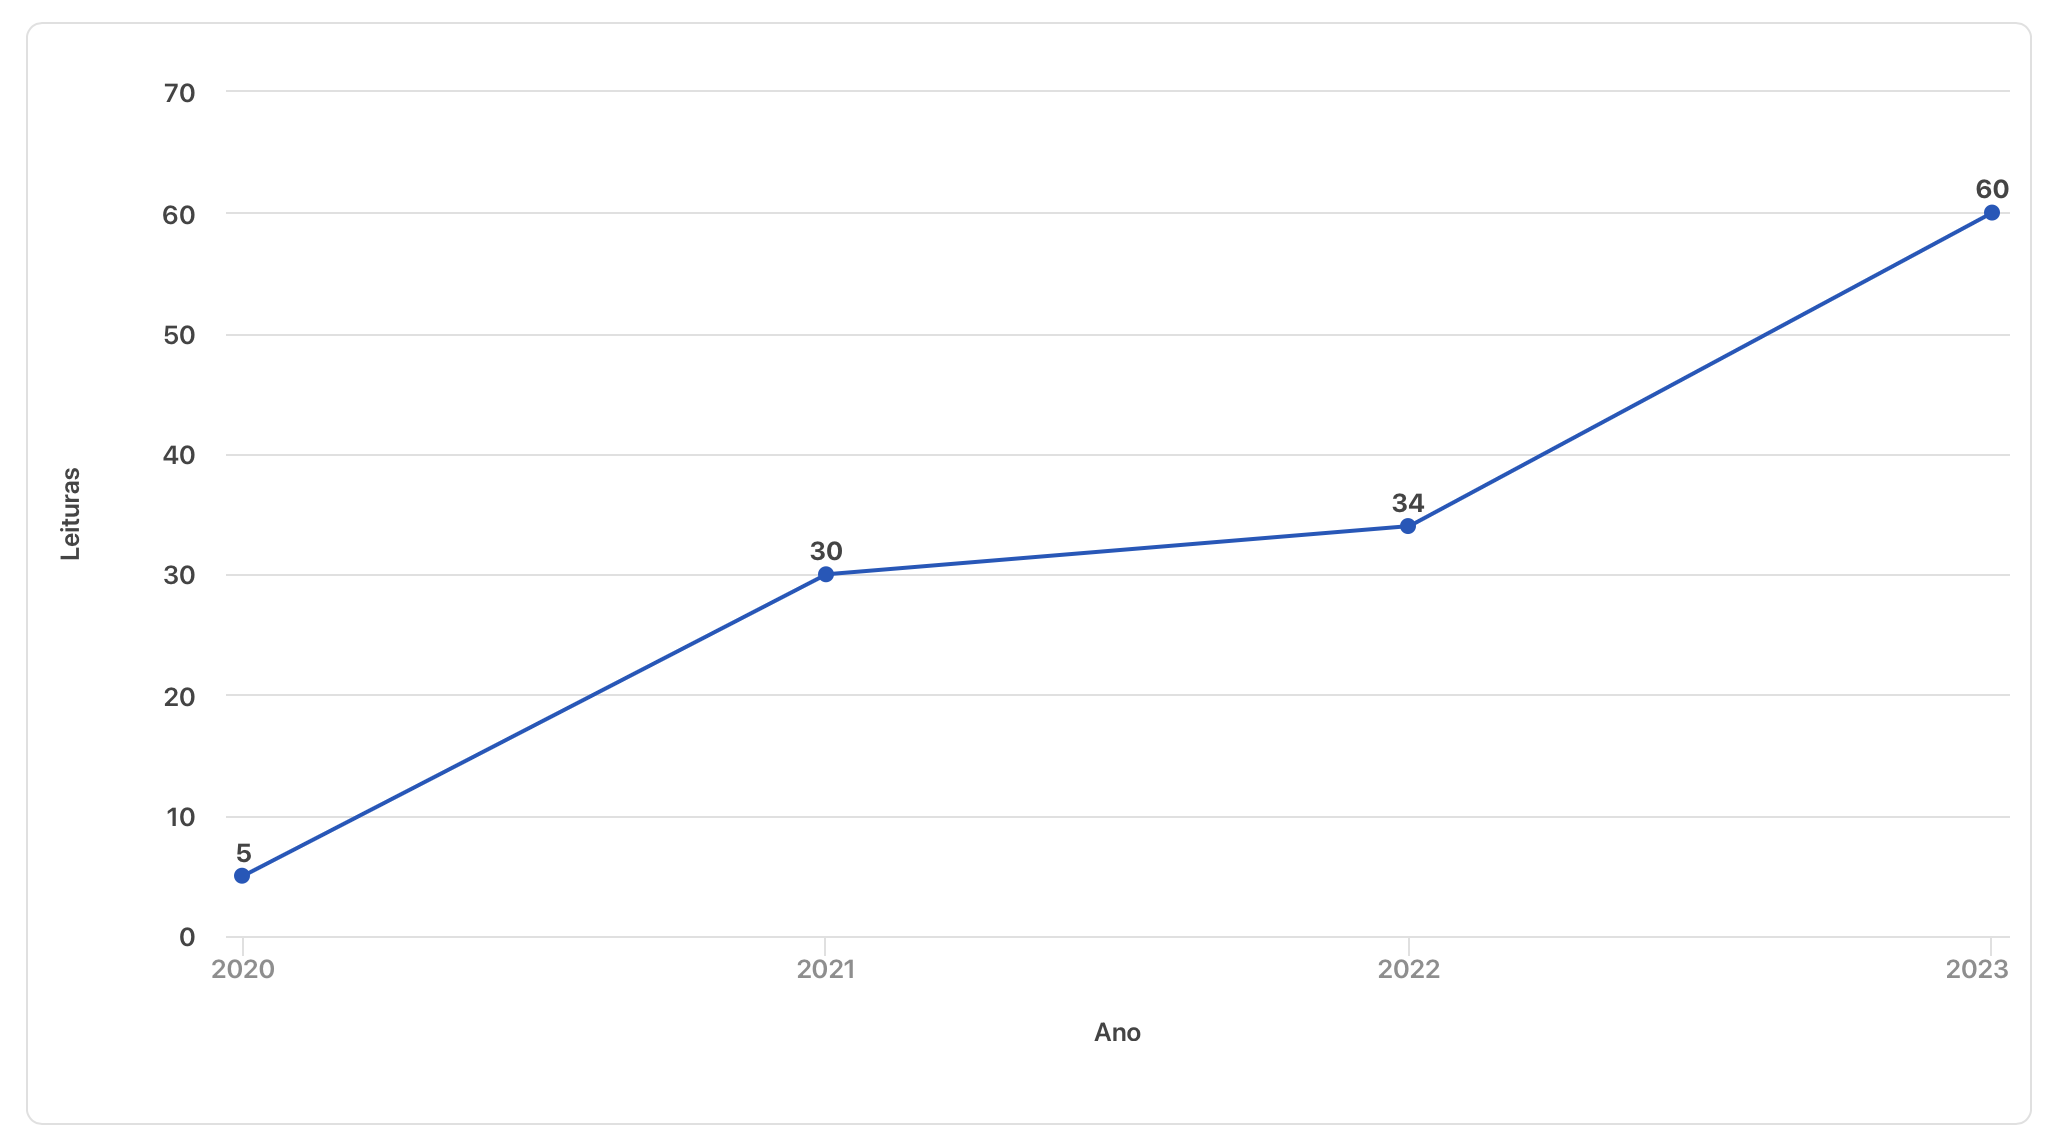 Gráfico com a evolução do número de livros lidos desde 2020 até 2023. O números de livros lidos por ano são: 5, 30, 34 e 60.